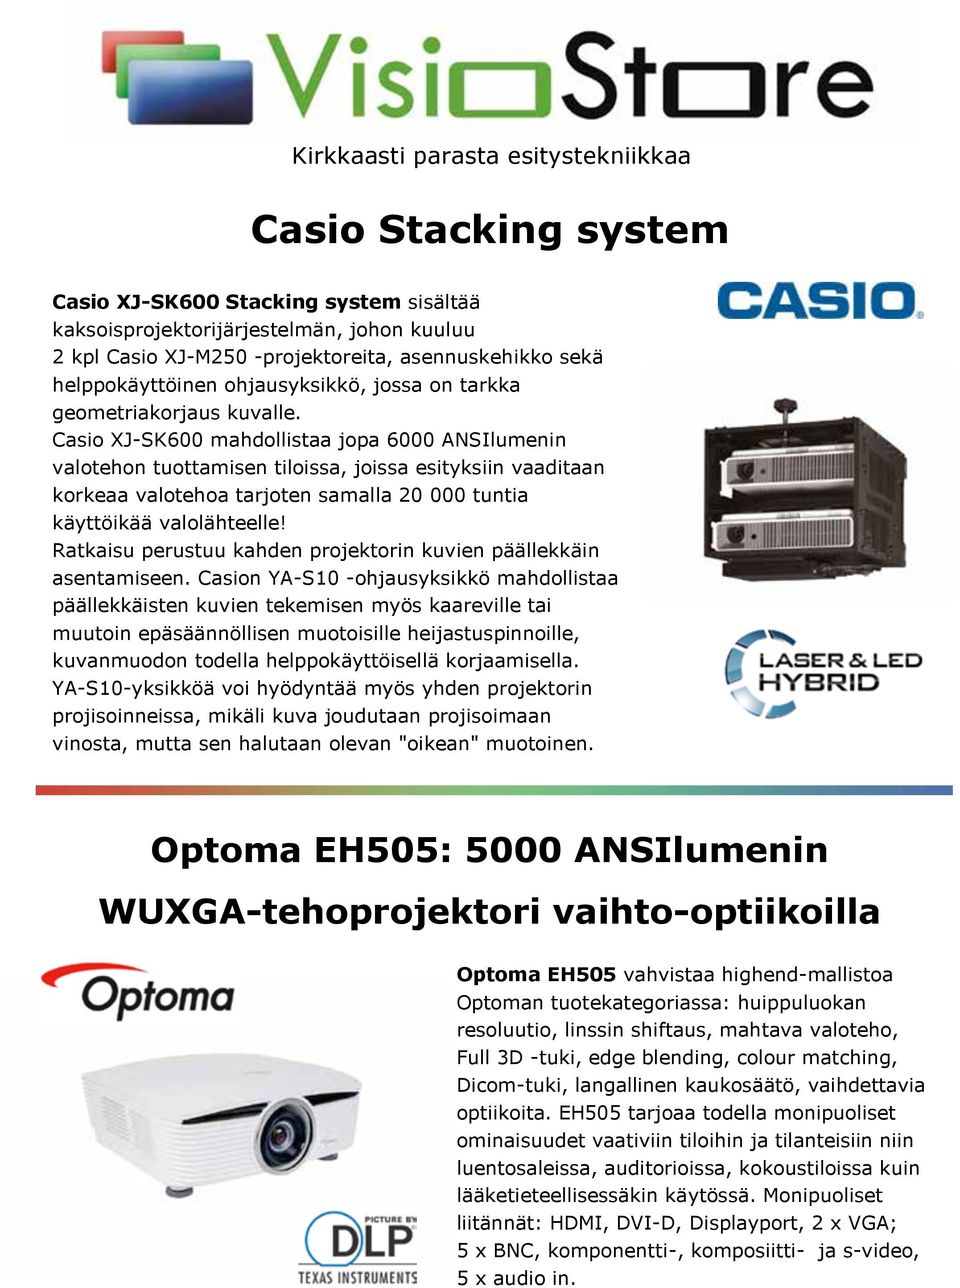 Casio XJ-SK600 mahdollistaa jopa 6000 ANSIlumenin valotehon tuottamisen tiloissa, joissa esityksiin vaaditaan korkeaa valotehoa tarjoten samalla 20 000 tuntia käyttöikää valolähteelle!